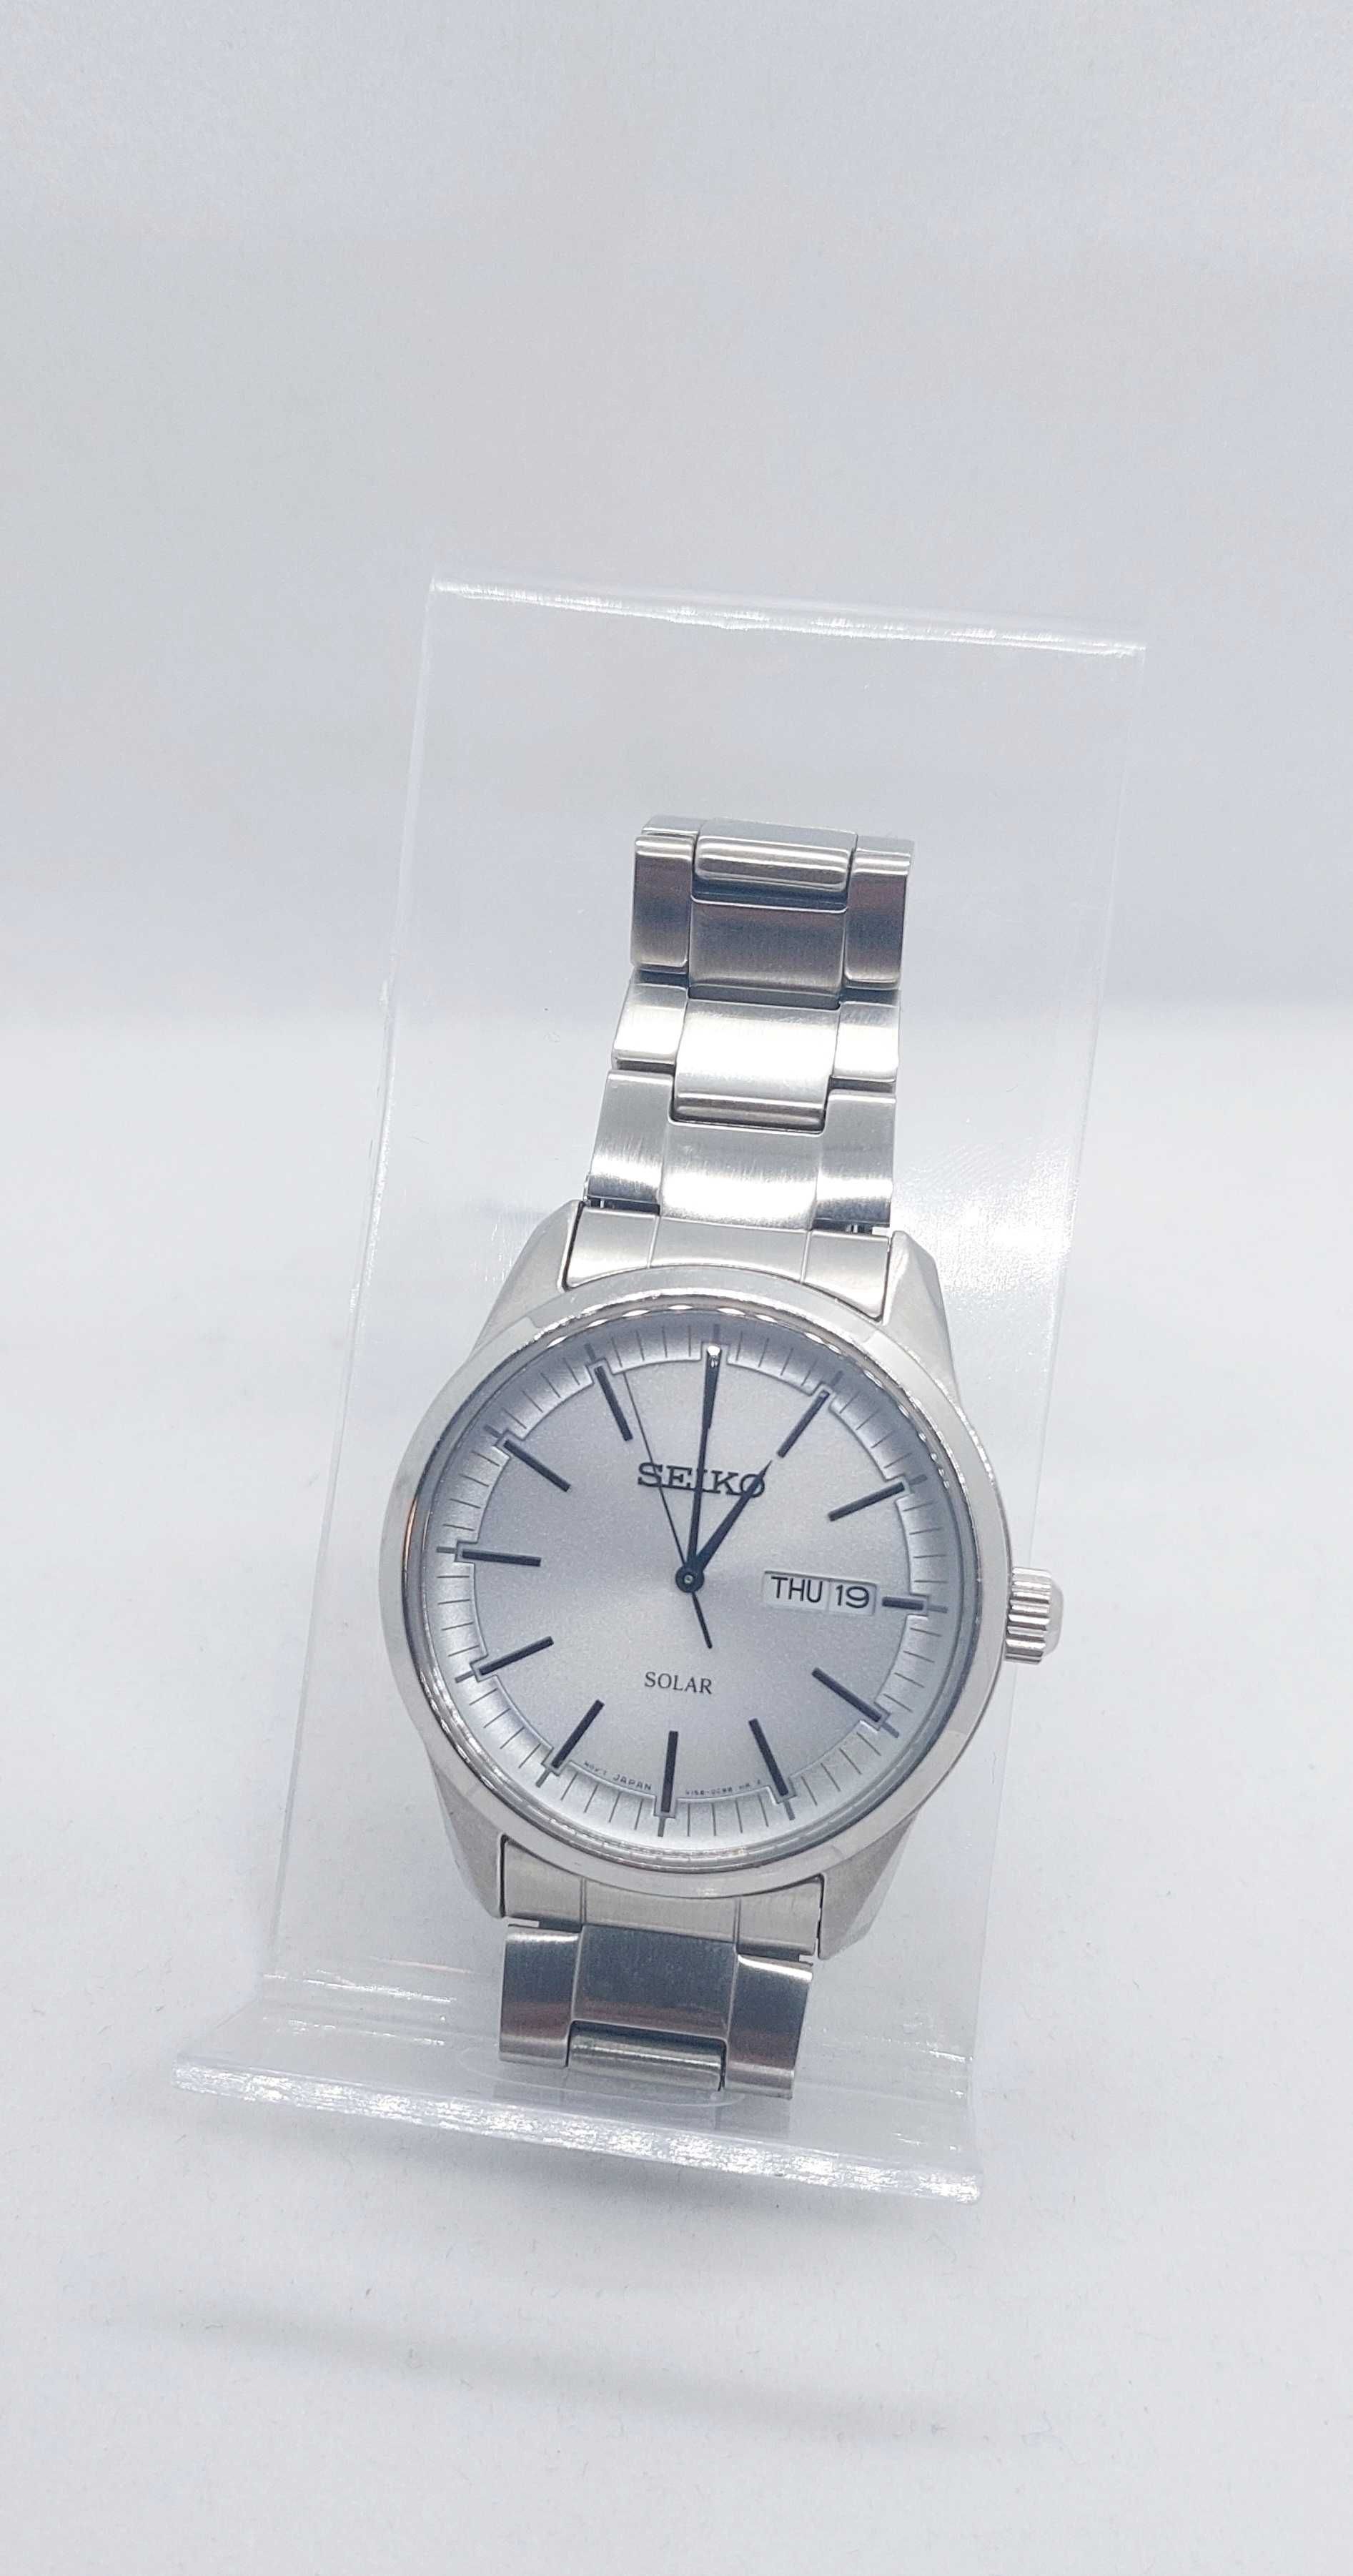 Zegarek Seiko Solar V158-0BE0 - stan wzorowy! Siedlce • 